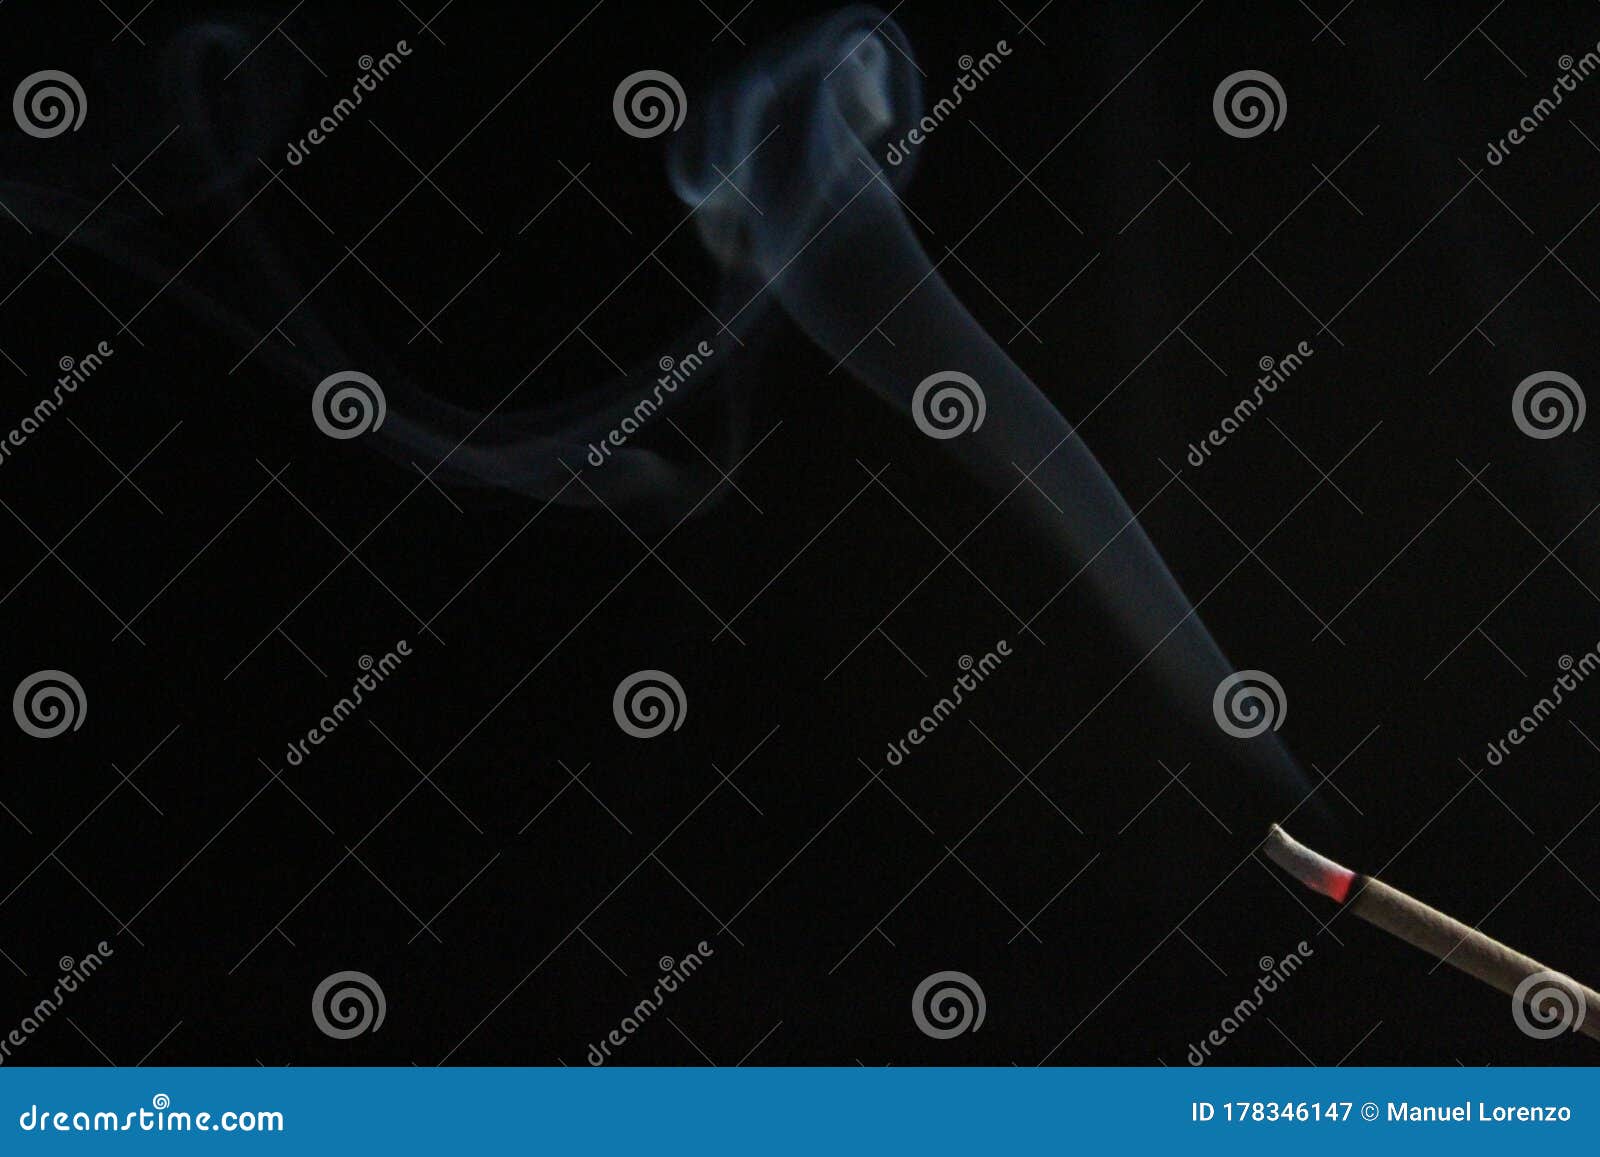 Aroma Incense Smoke Ethereal Odor Slight Figure Stock Image - Image of ...